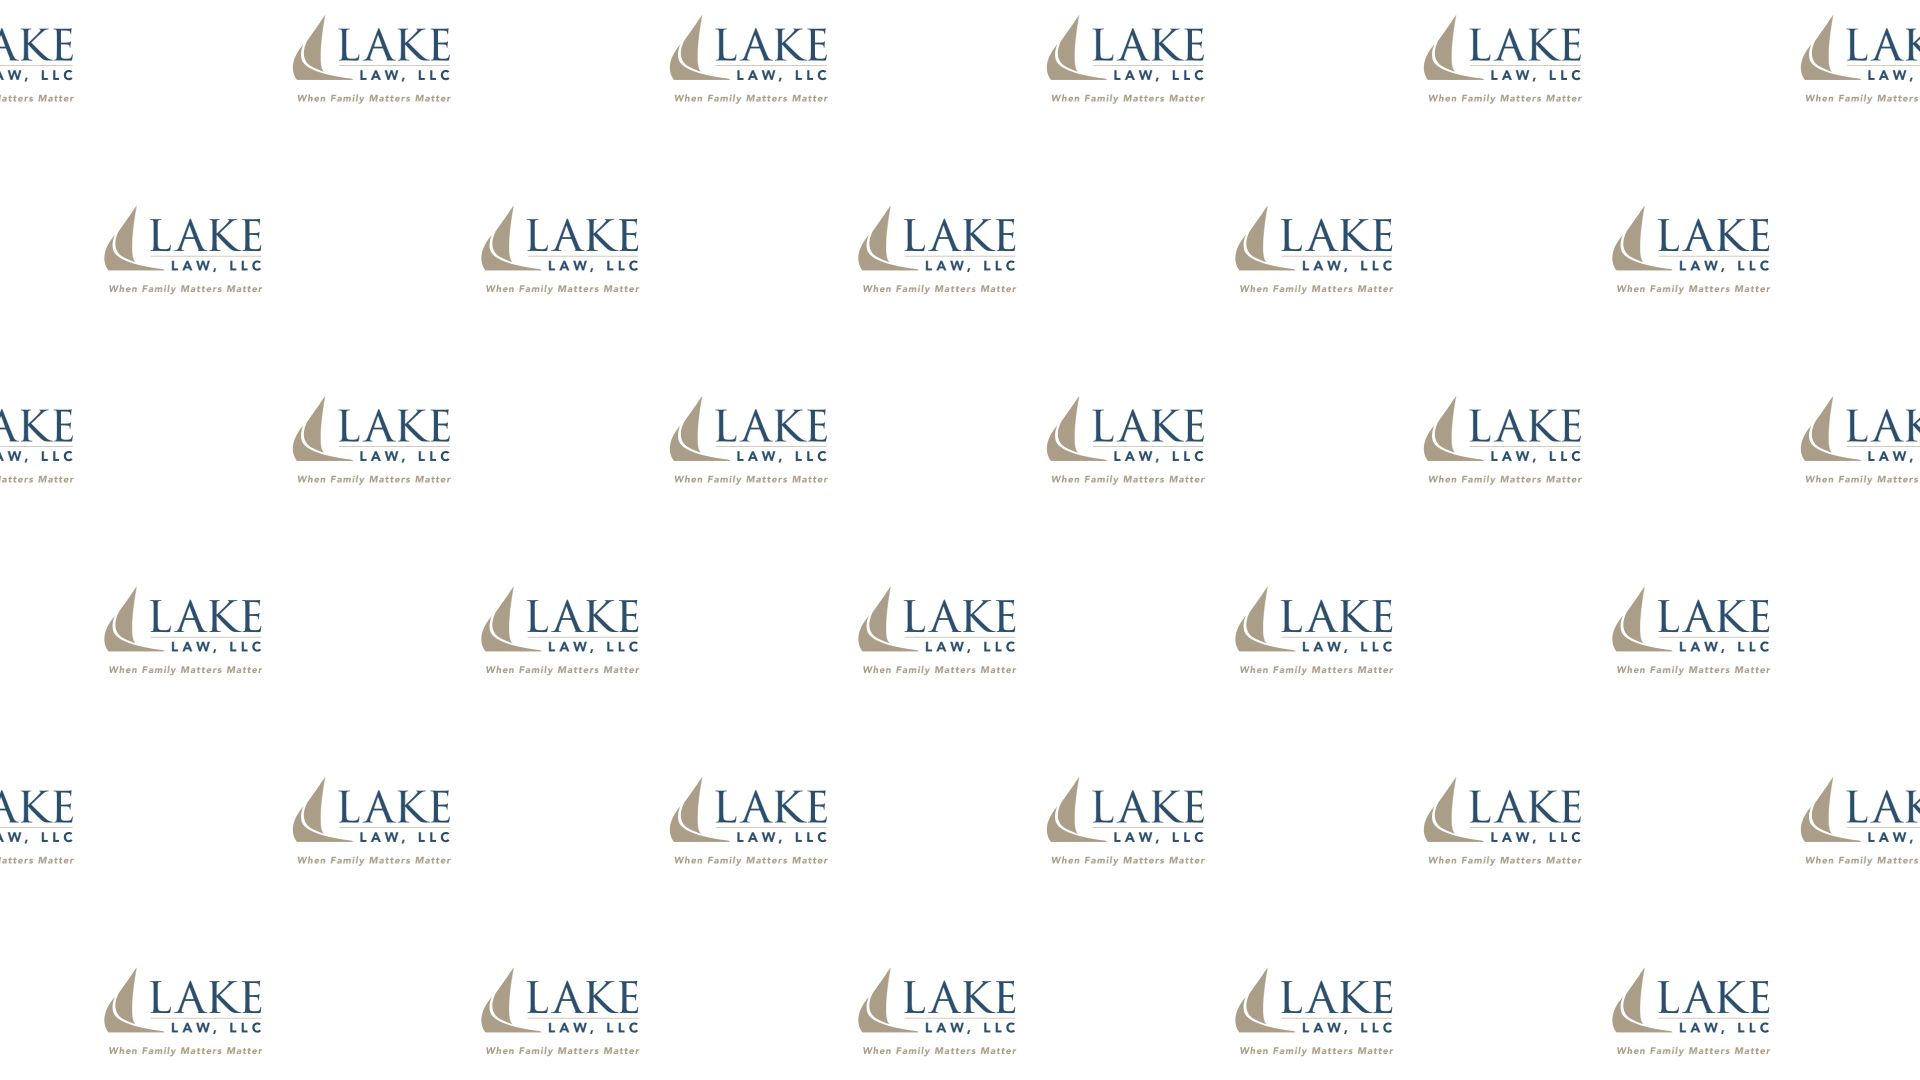 Lake Law